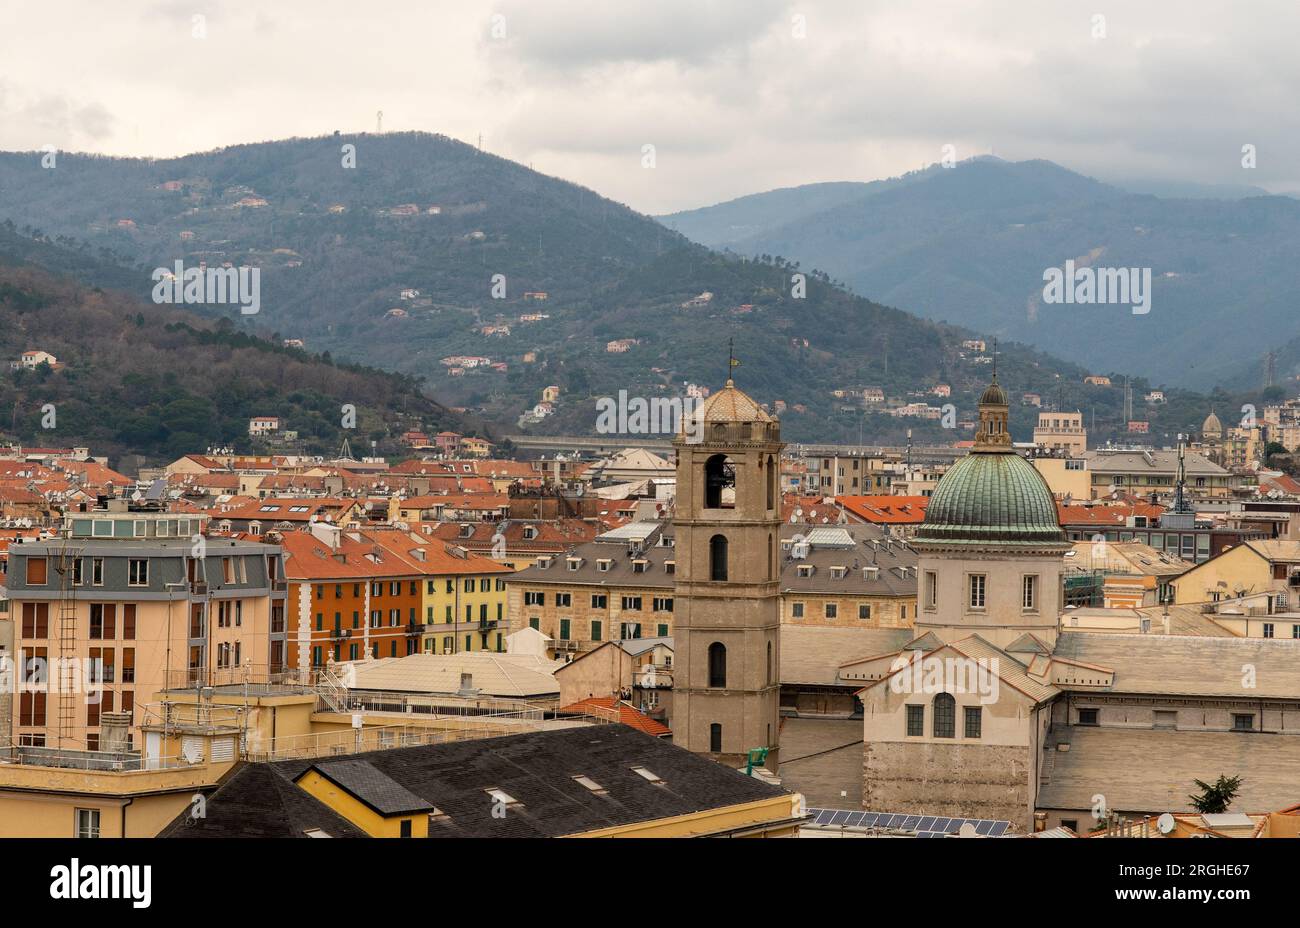 Paesaggio urbano panoramico con la Cattedrale di Santa Maria Assunta (1605) e la catena montuosa dell'Appennino Ligure in una giornata nuvolosa, Savona, Liguria, Italia Foto Stock